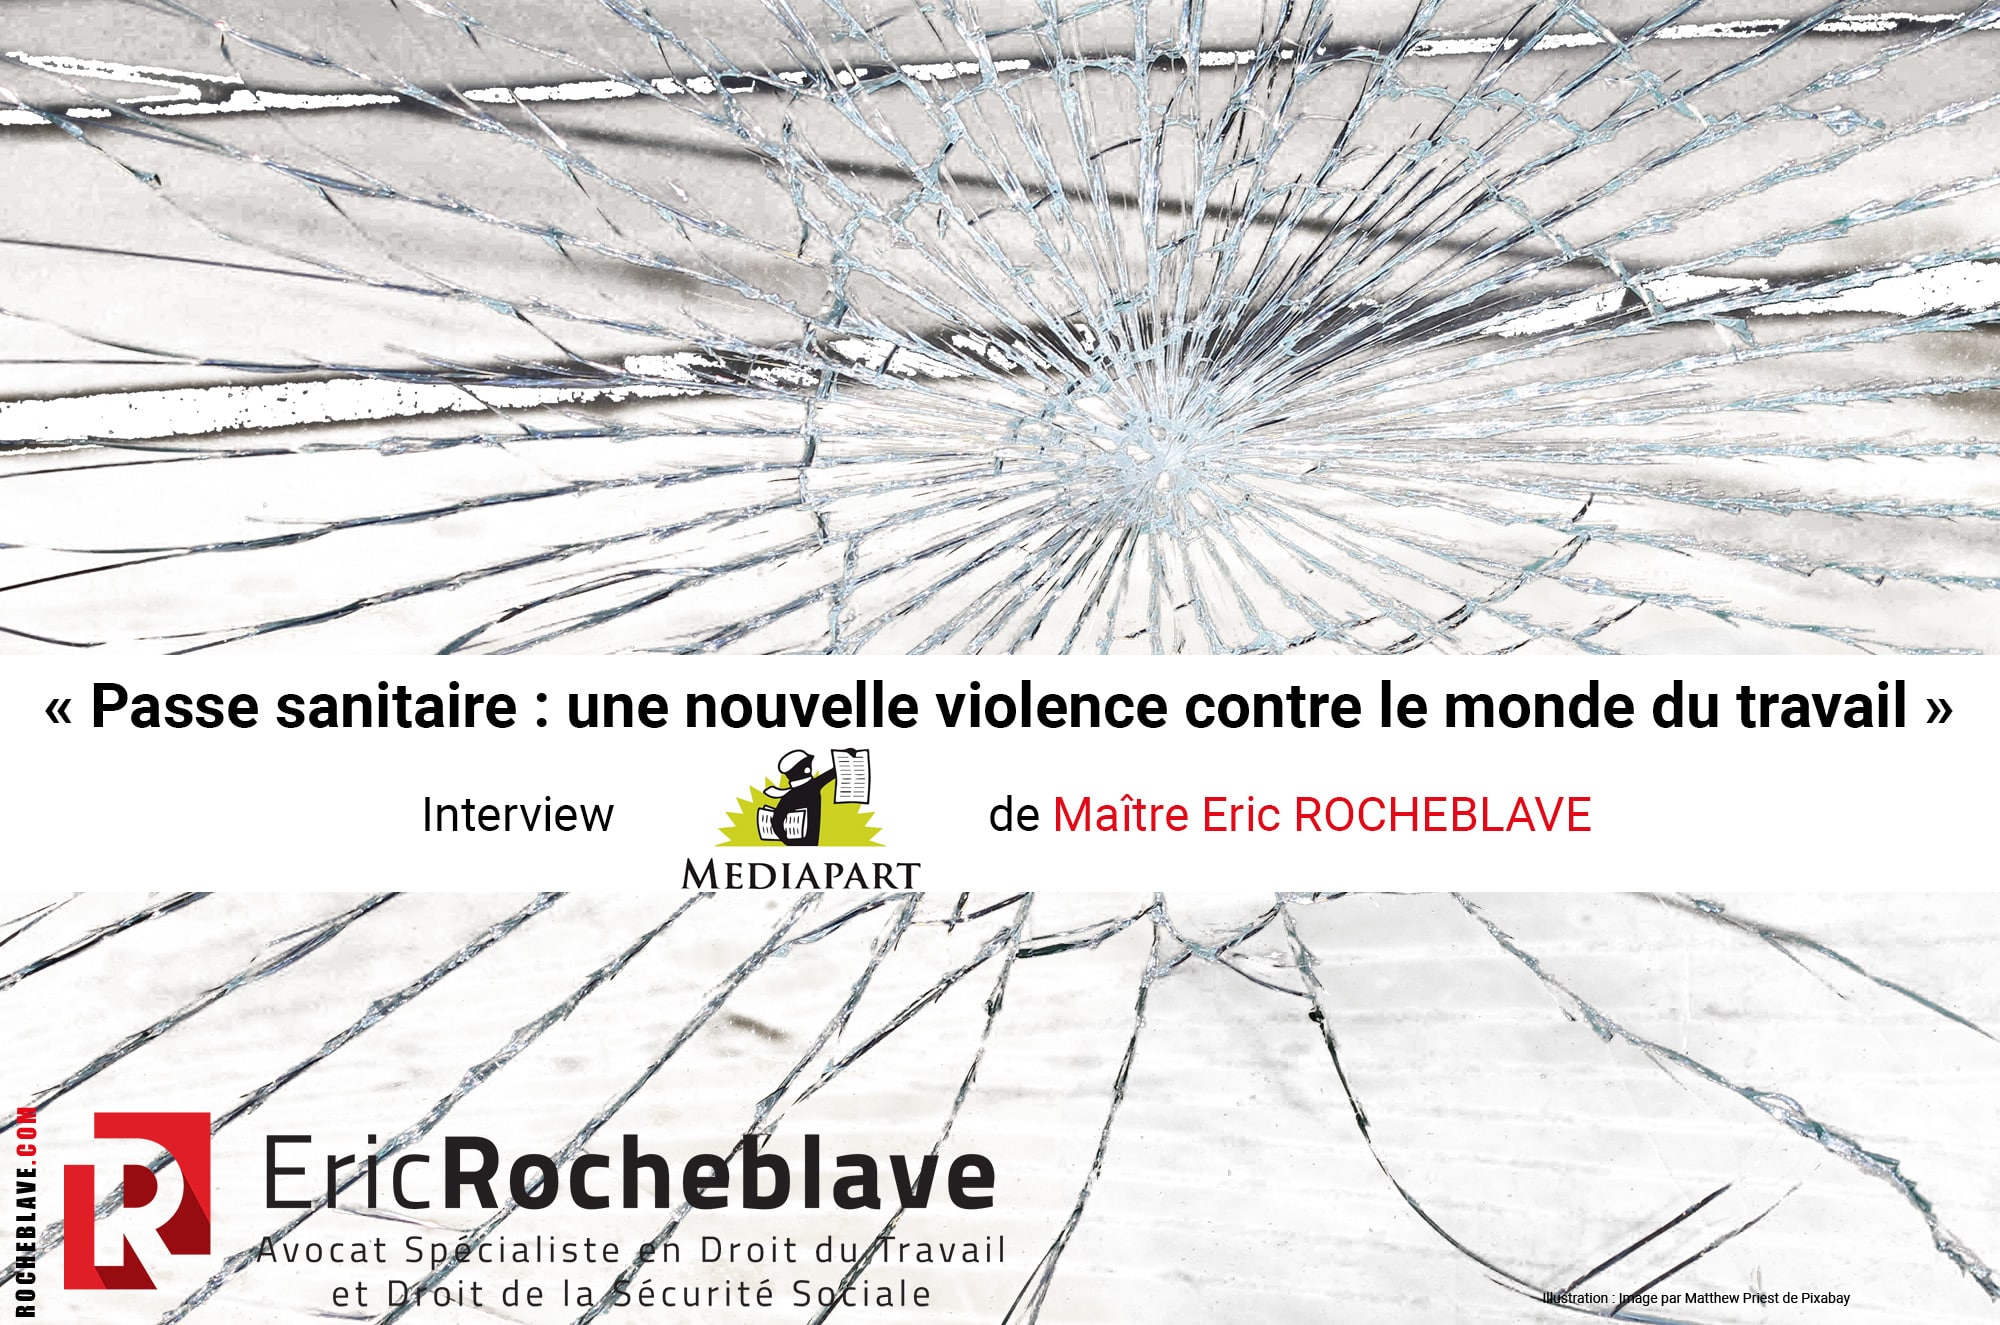 « Passe sanitaire : une nouvelle violence contre le monde du travail » Interview MEDIAPART de Maître Eric ROCHEBLAVE